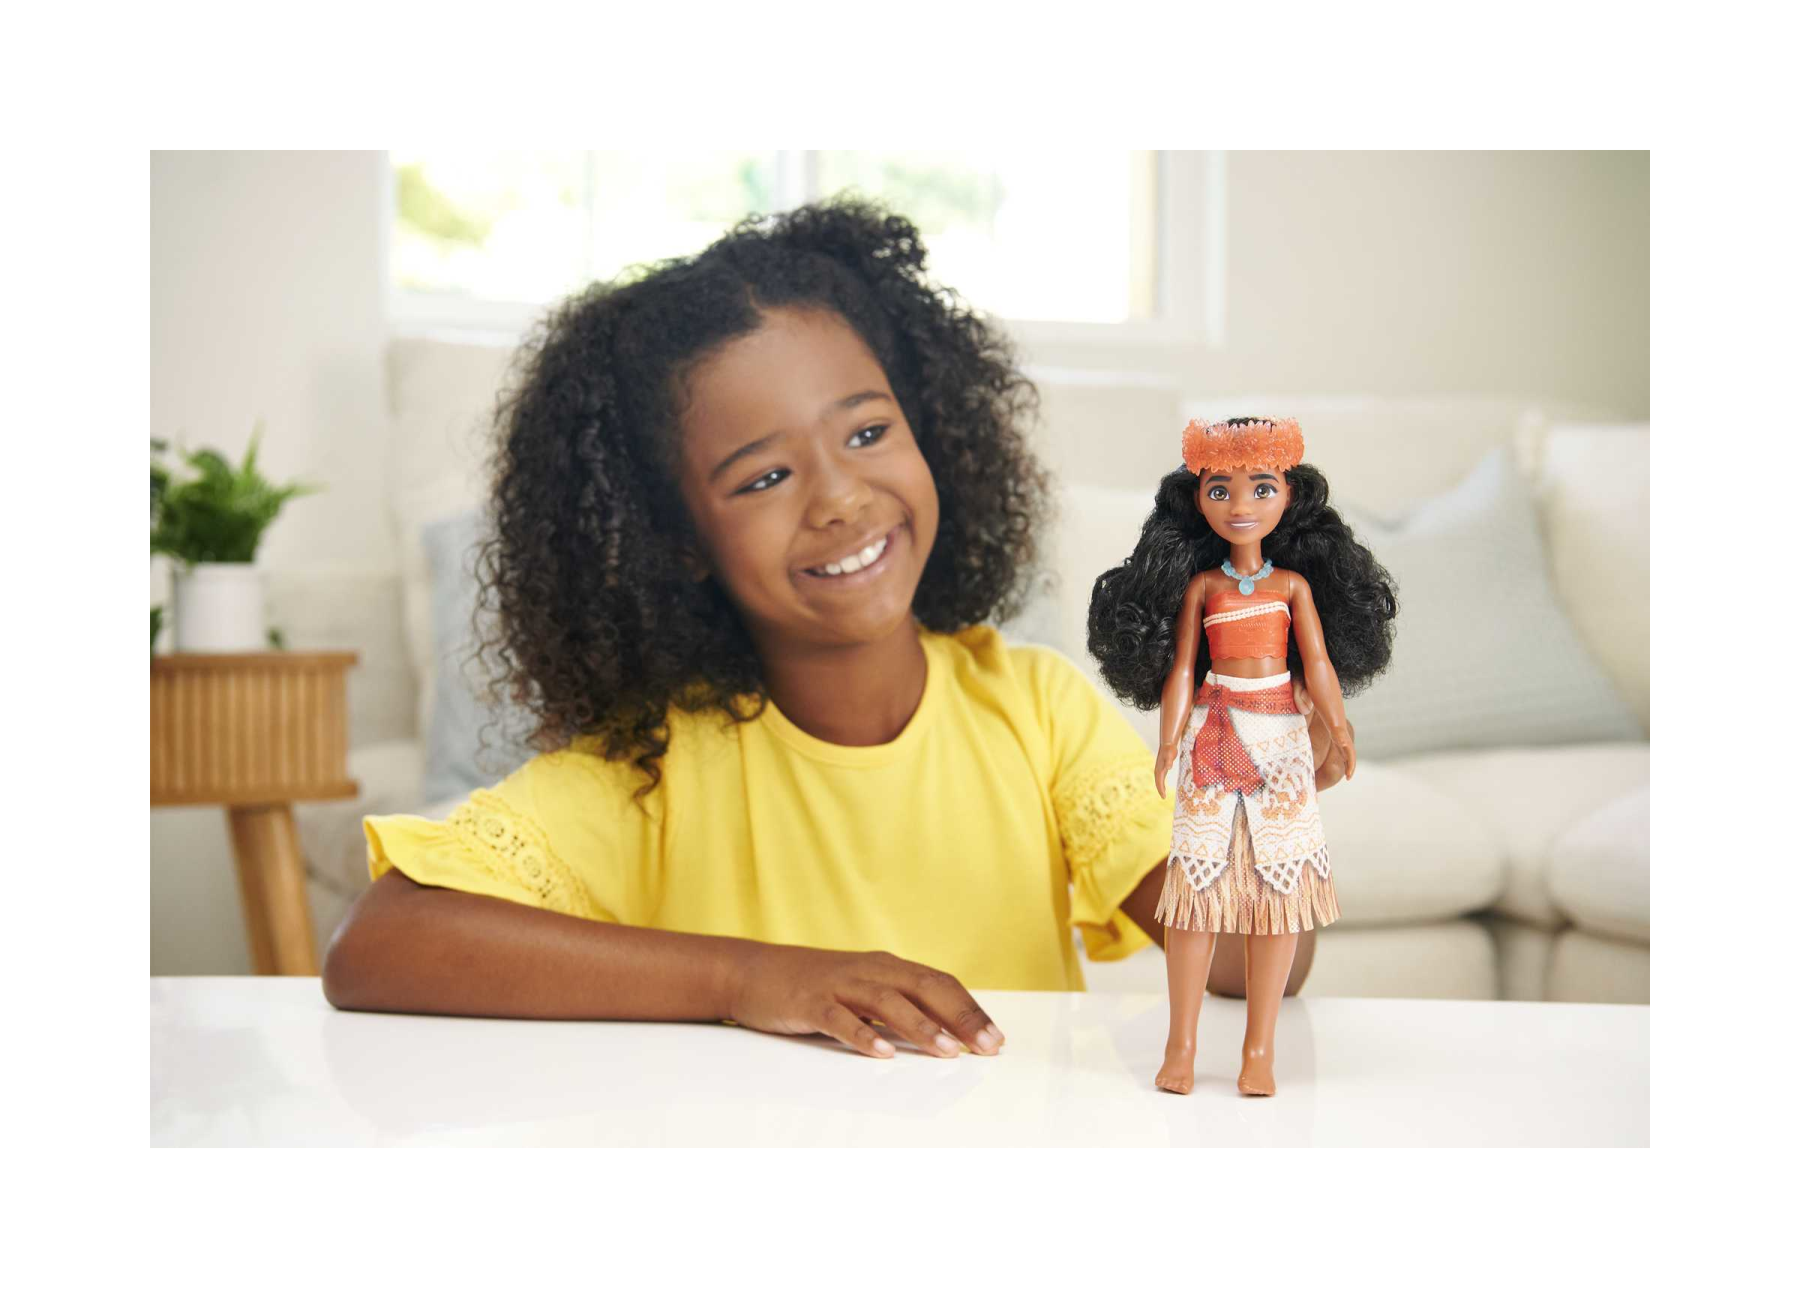 Disney princess - vaiana, bambola snodata con capi e accessori scintillanti ispirati al film disney, giocattolo per bambini, 3+ anni, hpg68 - DISNEY PRINCESS